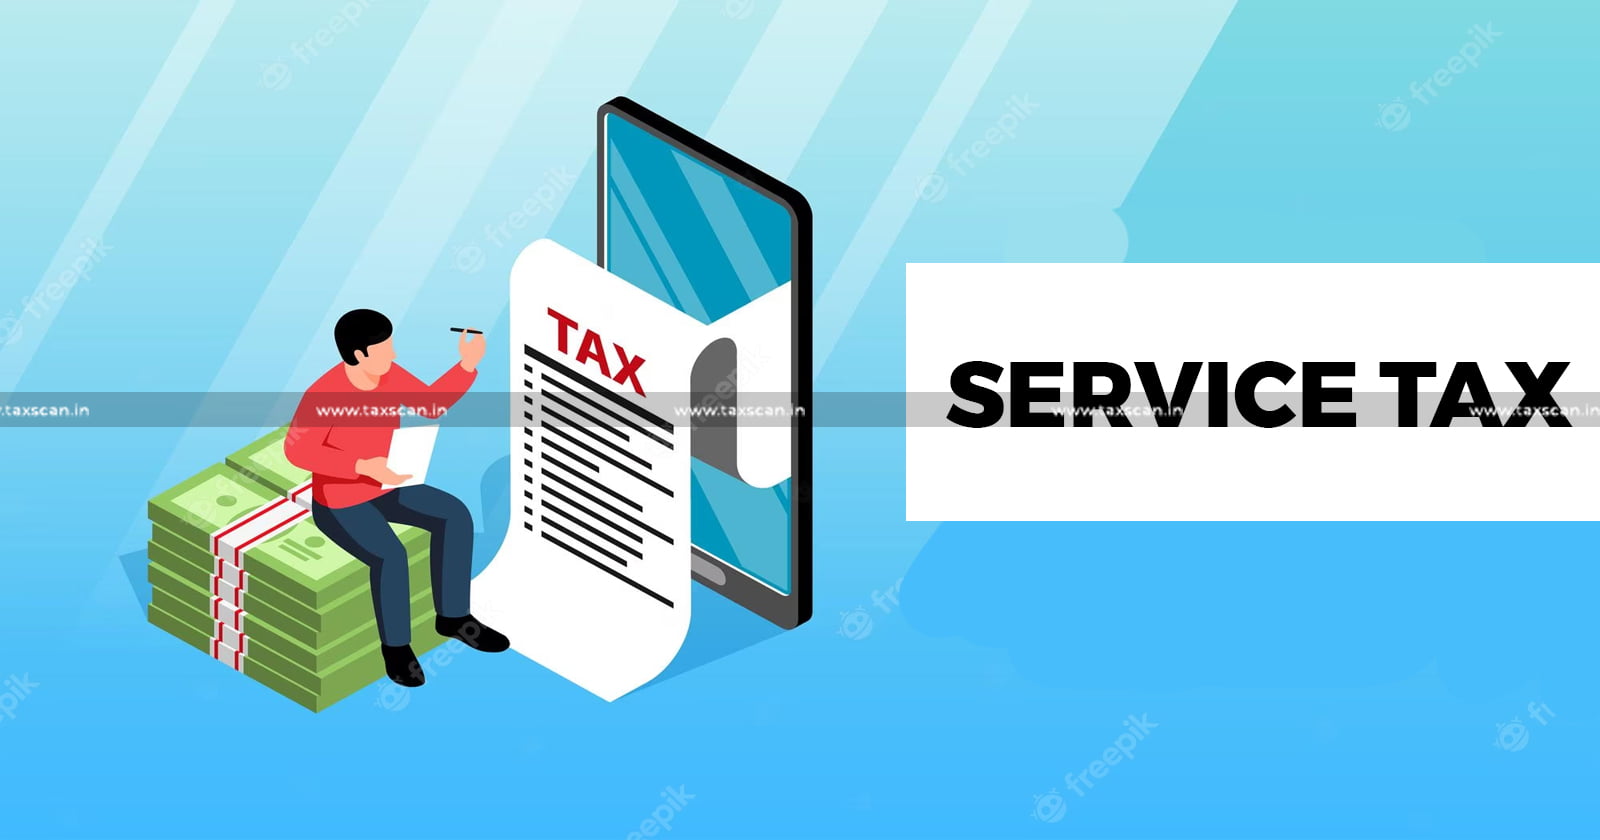 CESTAT - CESTAT Hyderabad - Service Tax - Statutory Records - CESTAT on service tax - TAXSCAN